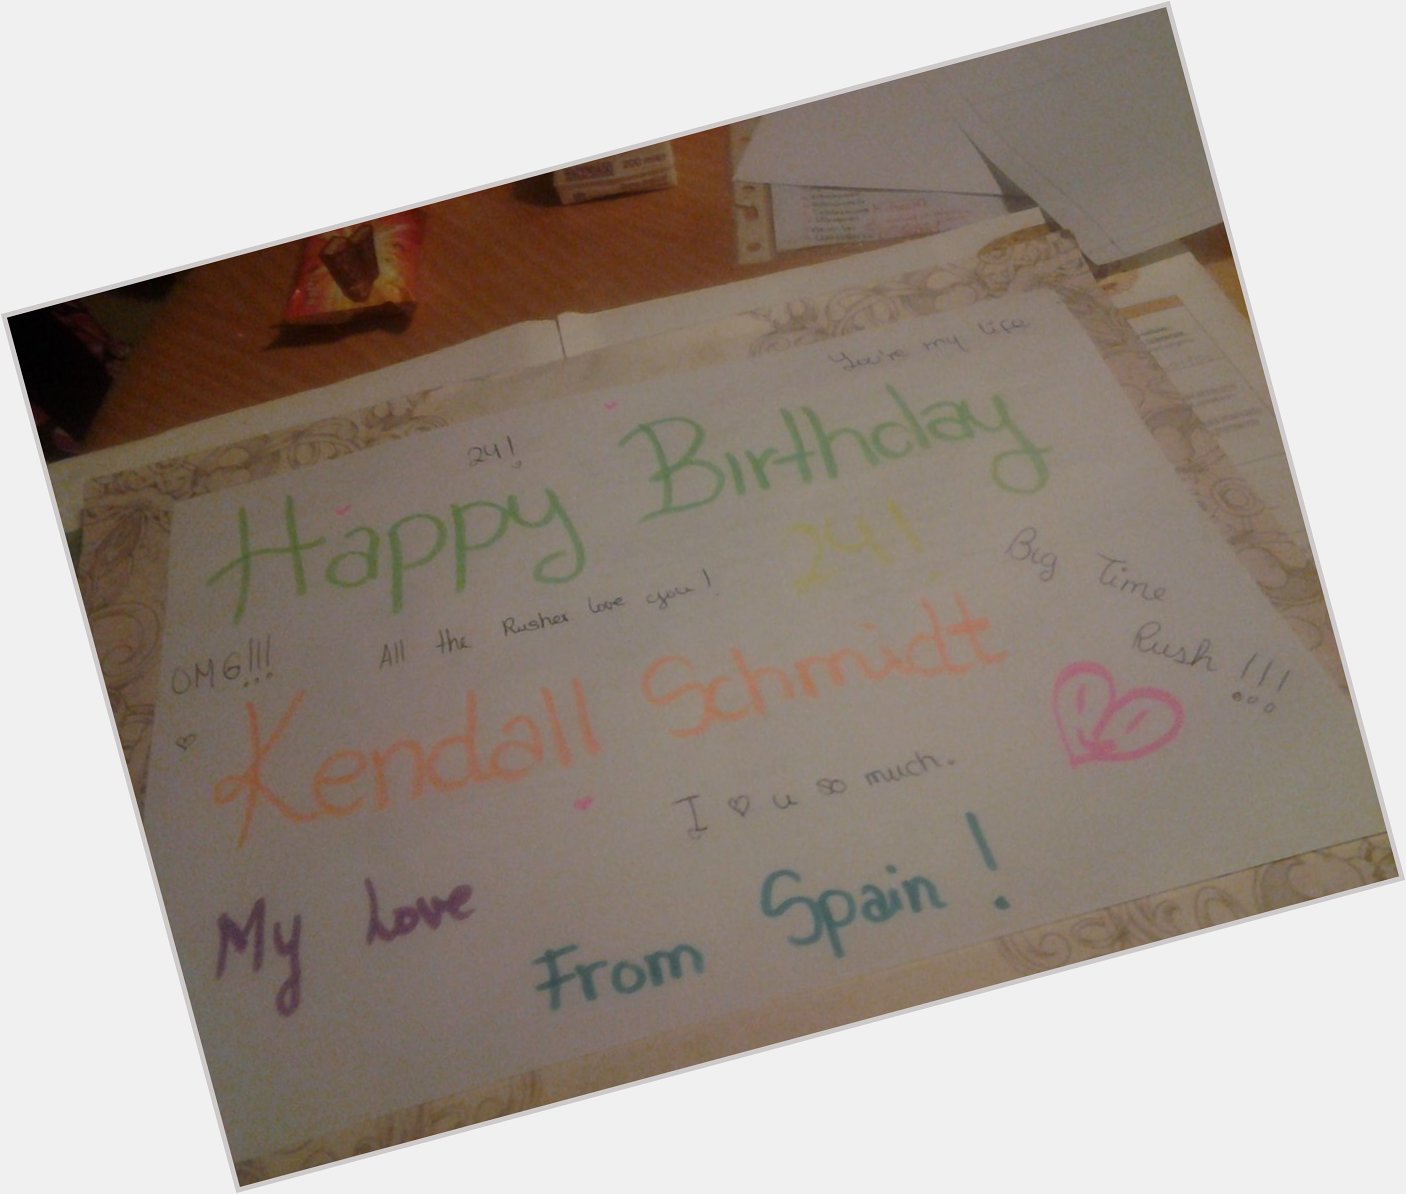  happy birthday Kendall Schmidt (  ³ )  from spain. U r my life. Loveeee you!!!! 24 (: 